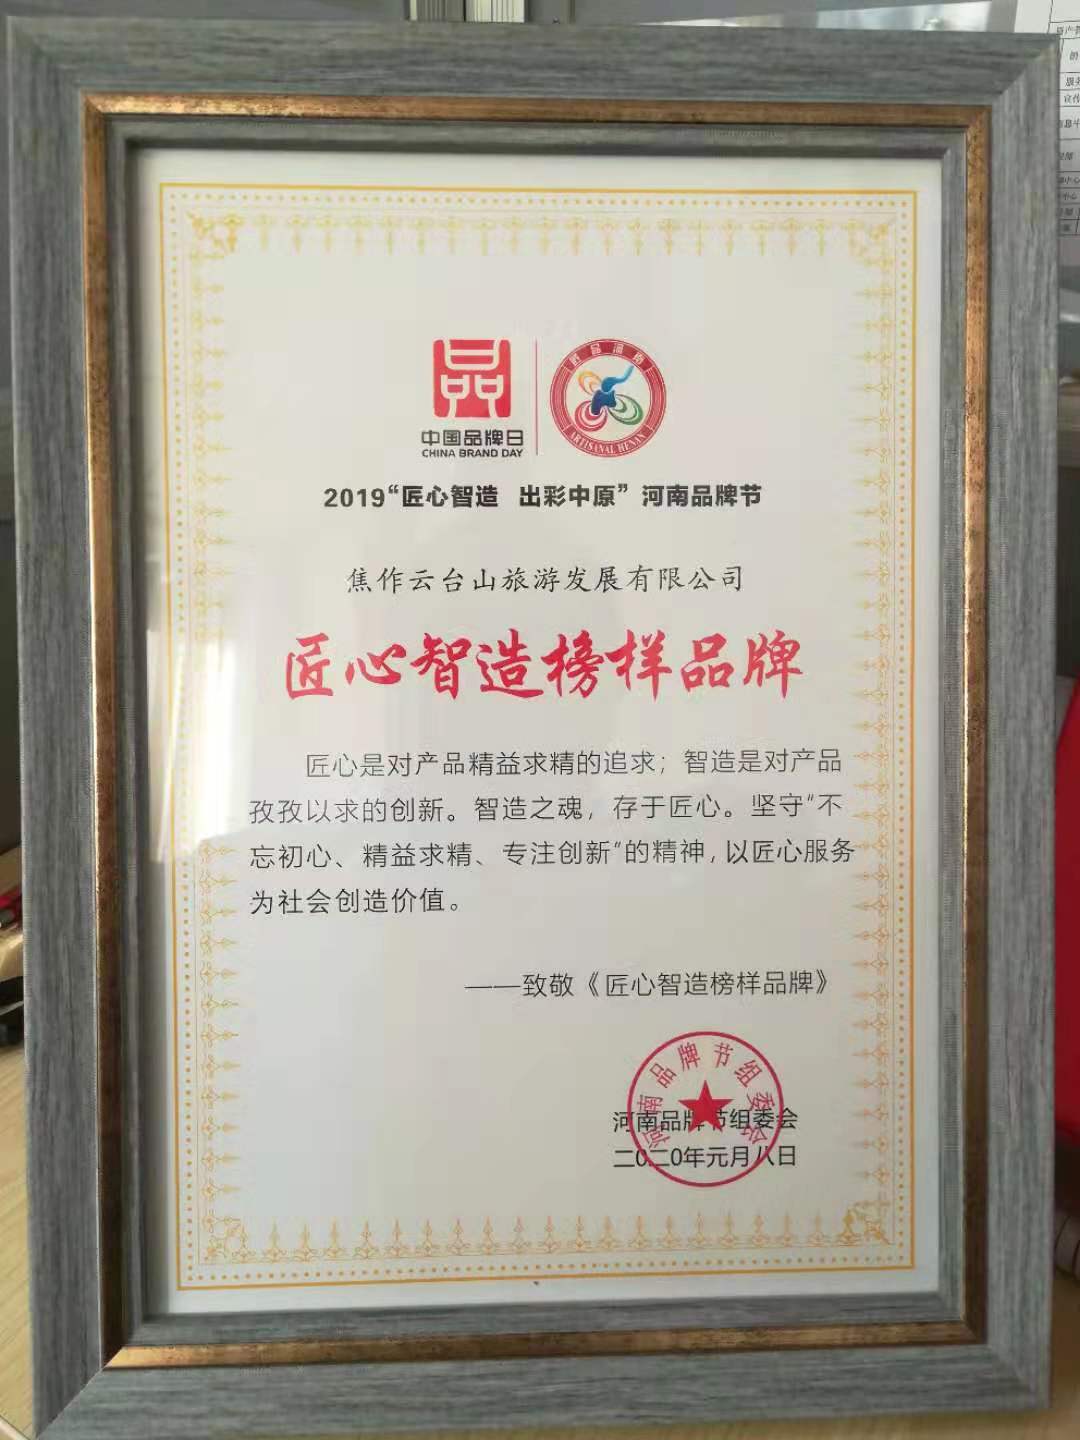 河南品牌节组委会授予云台山旅游发展有限公司“匠心智造榜样品牌”荣誉称号。